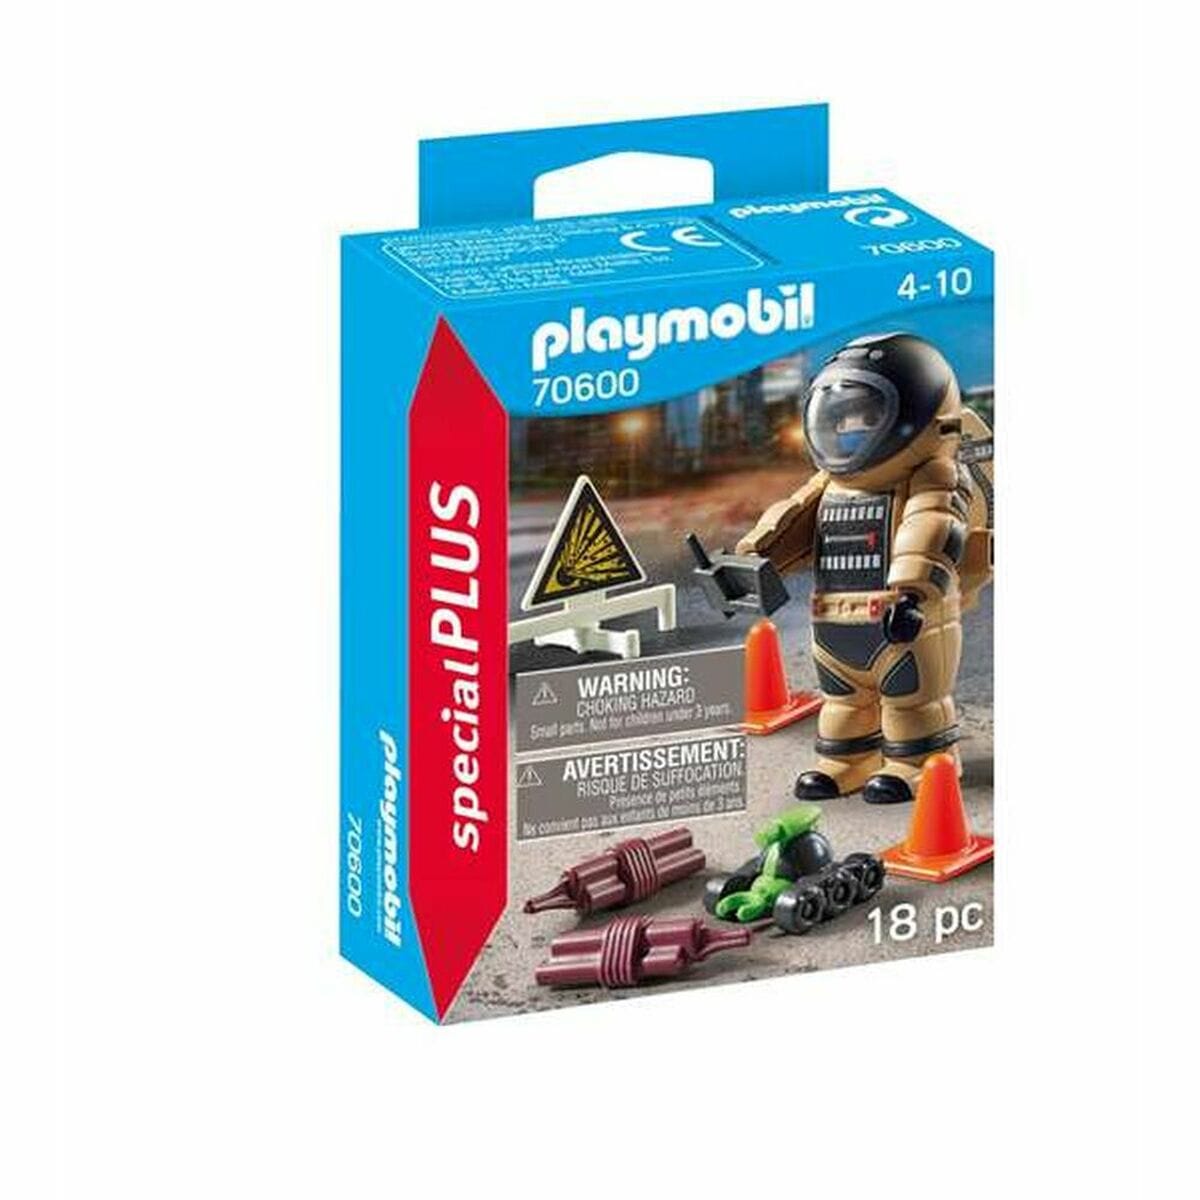 Playmobil Spielzeug | Kostüme > Spielzeug und Spiele > Action-Figuren Figur mit Gelenken Playmobil 70600 70600 (18 pcs)